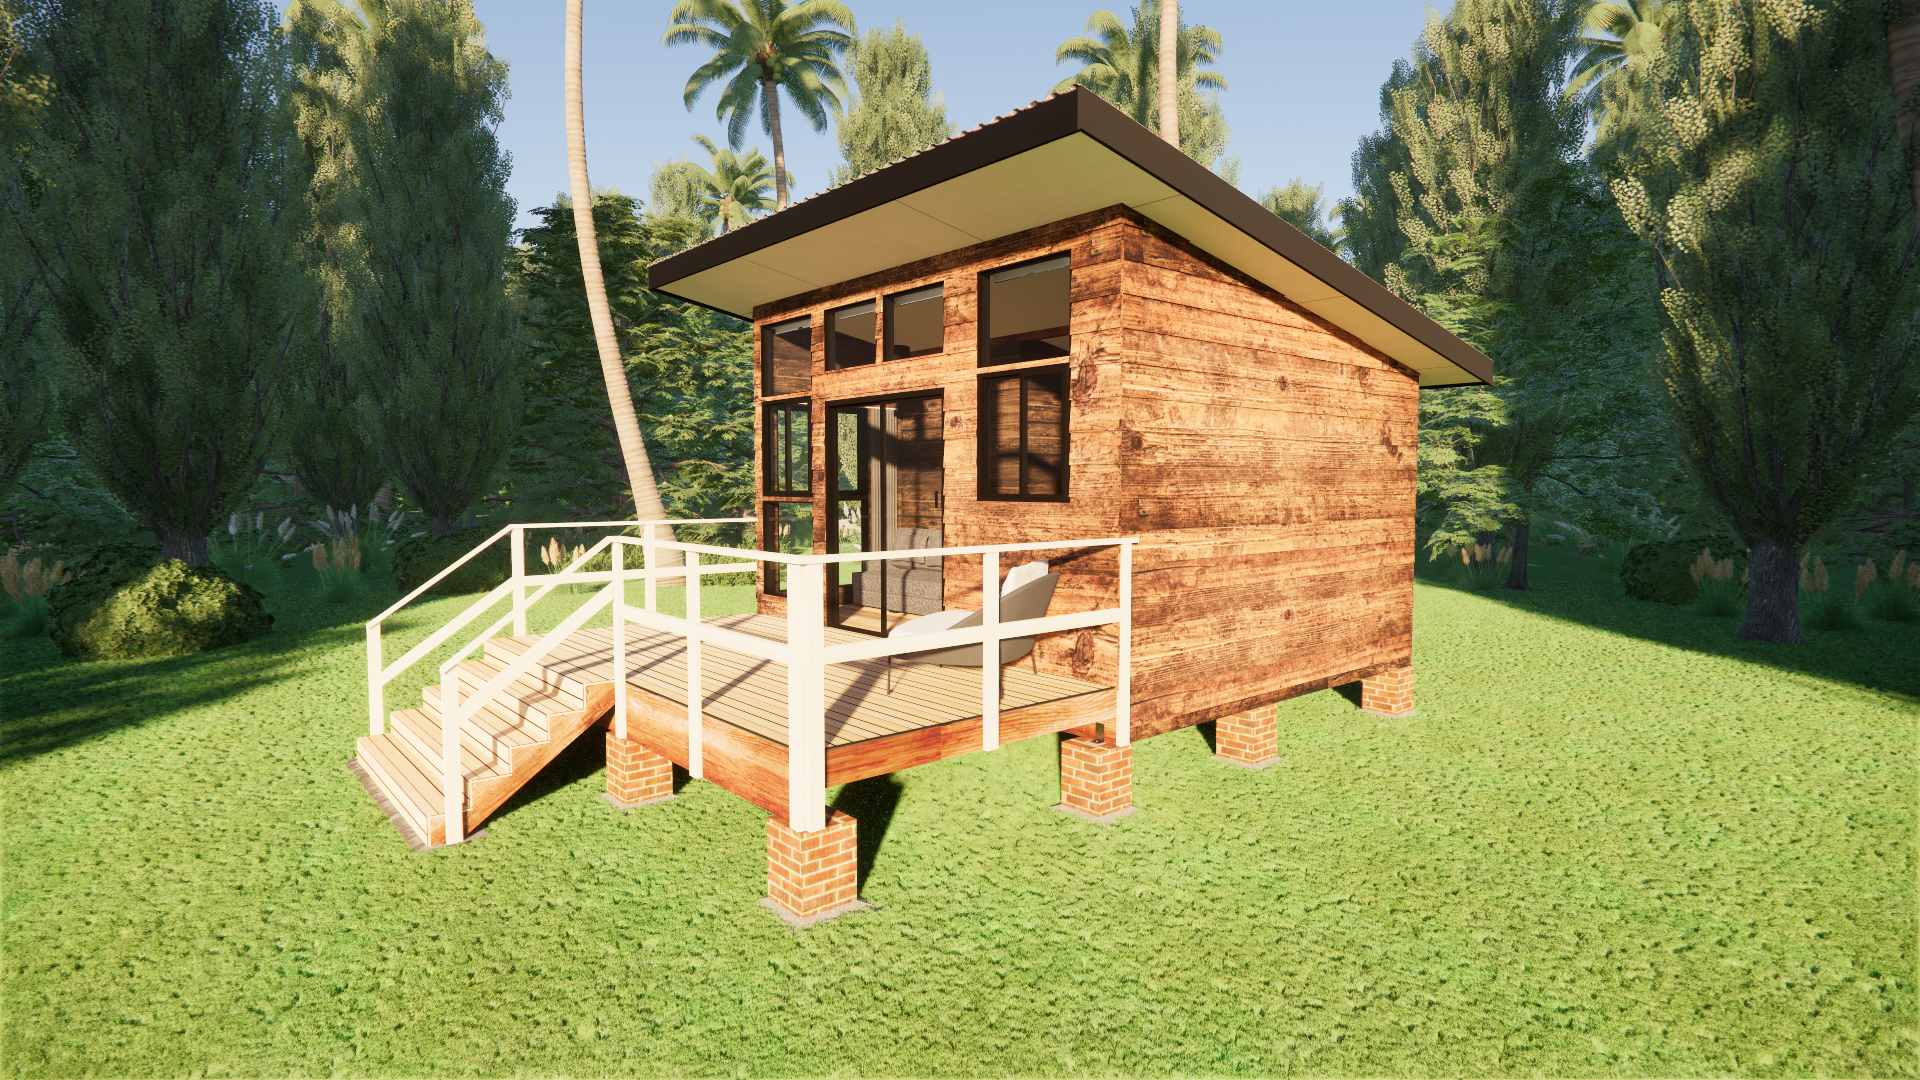 Classic Cabin Small - 22m2 Cabin Plans